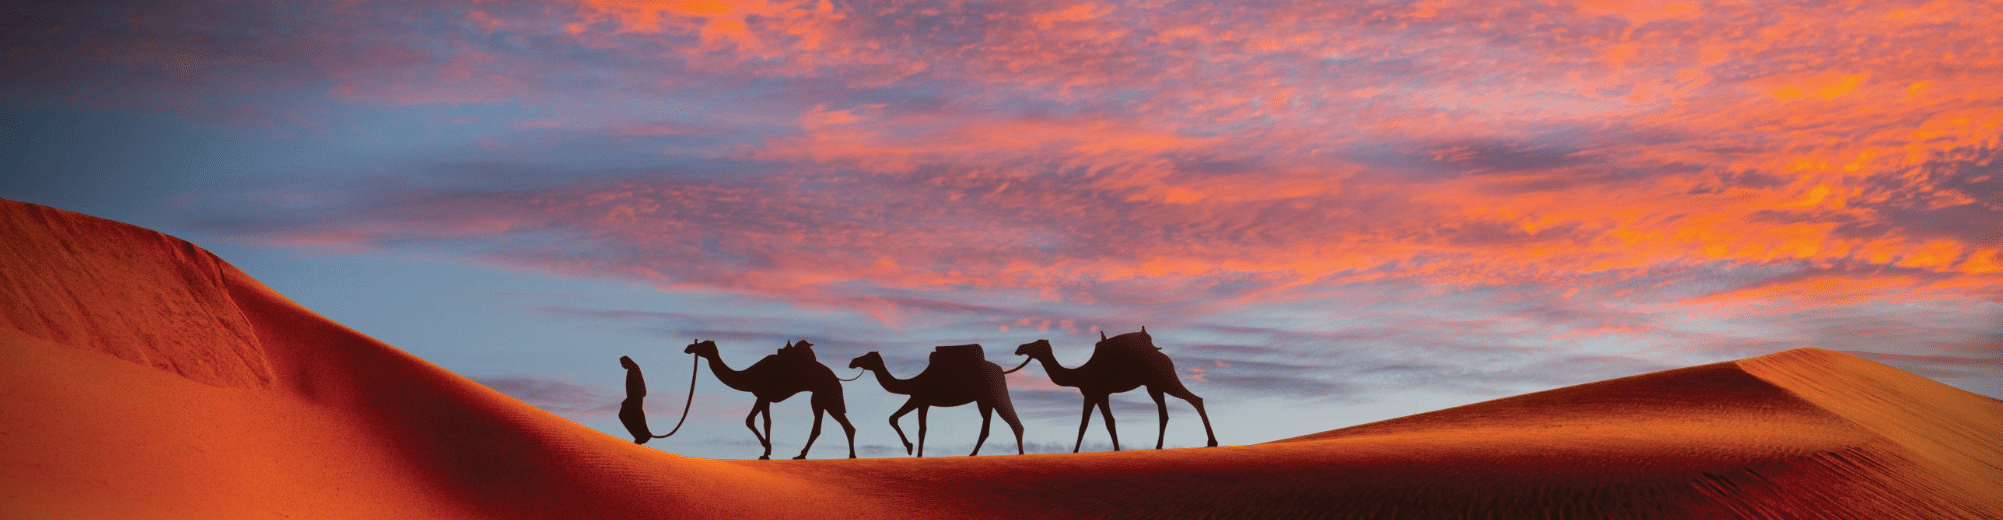 Afrika-kamelen-cruisebestemming